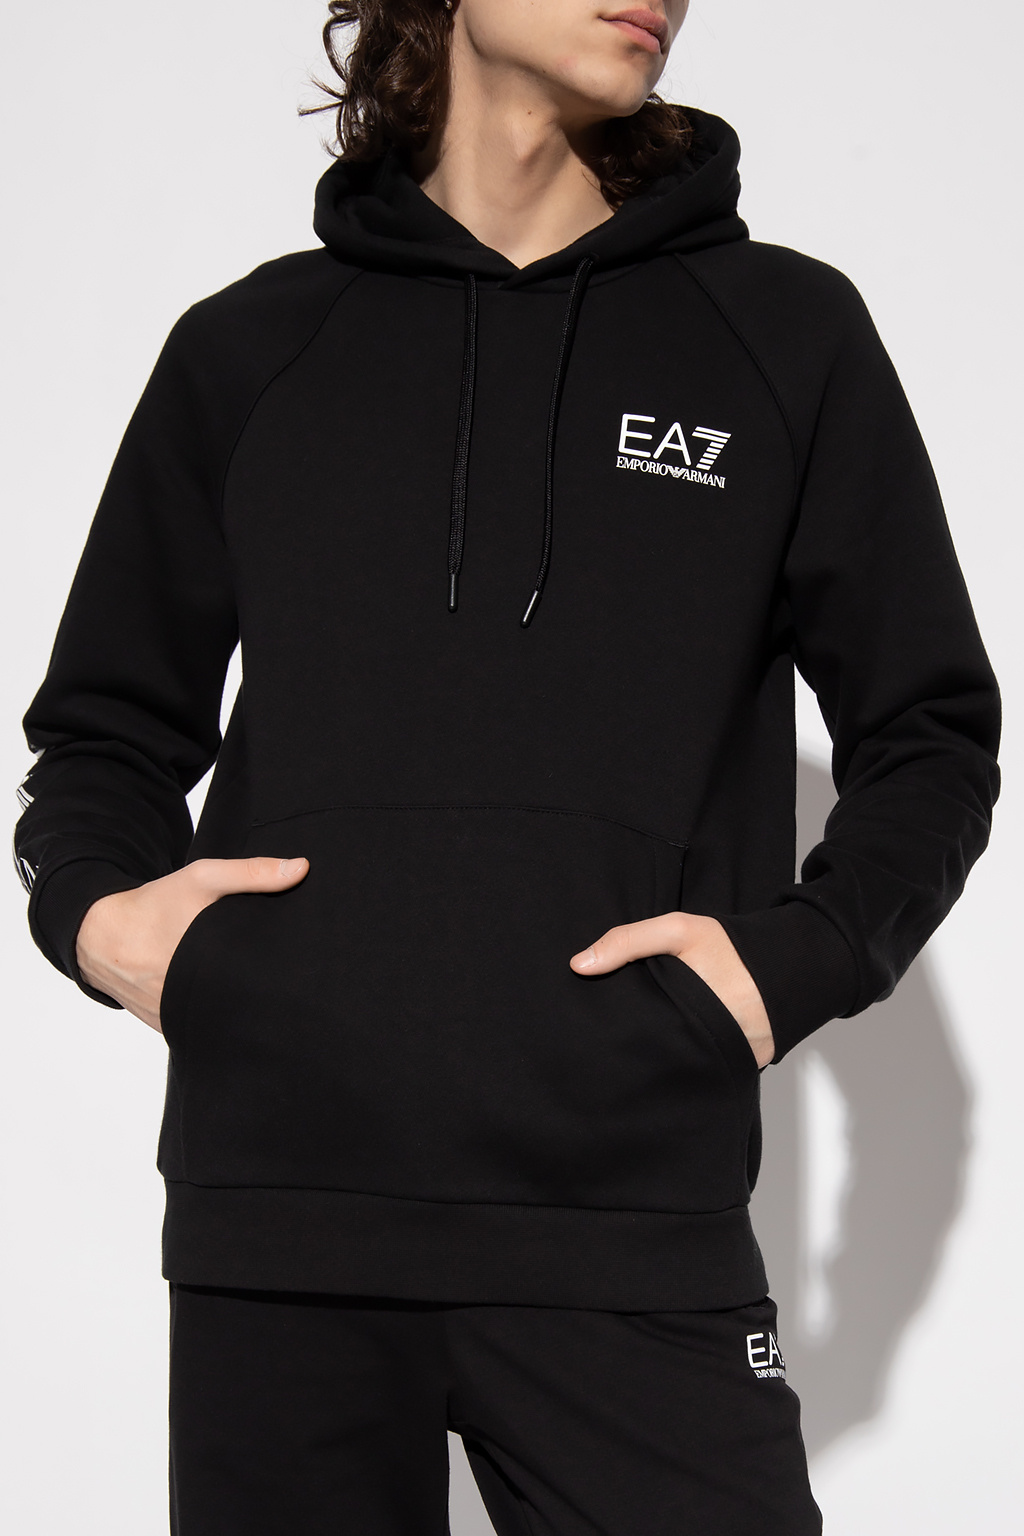 EA7 Emporio armani TNG Sweatshirt with logo